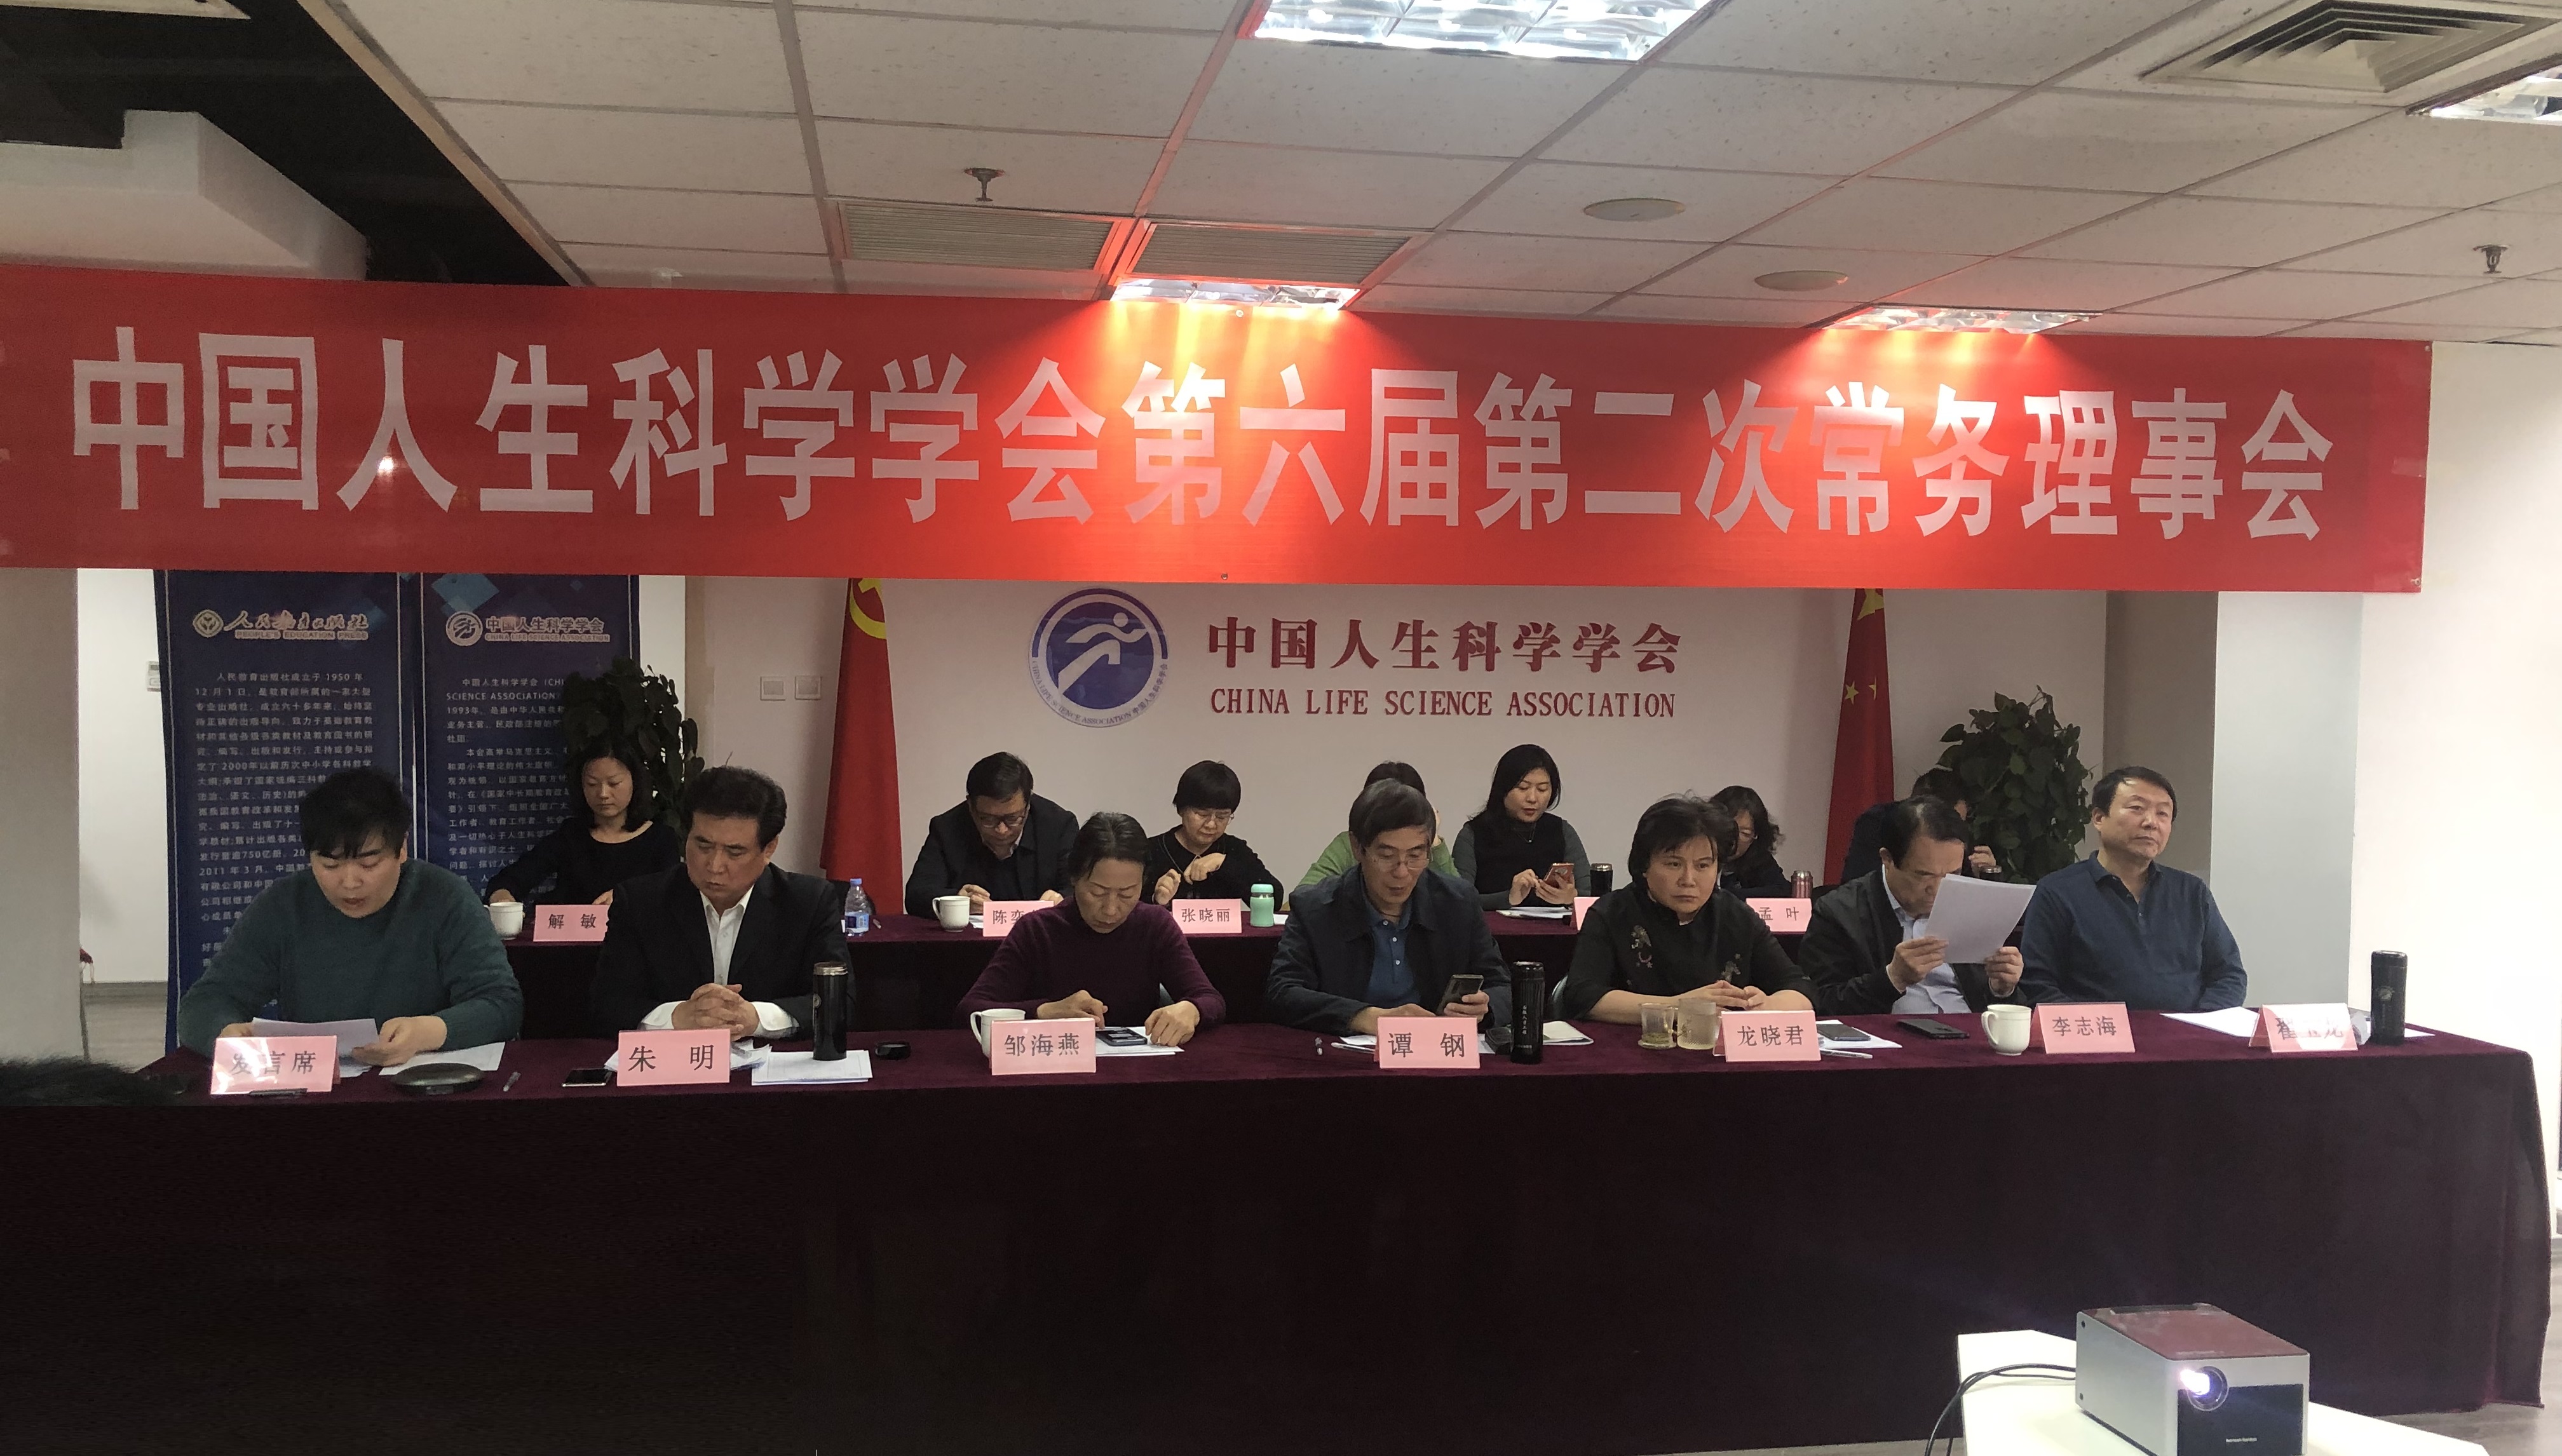 中国人生科学学会第六届第二次常务理事会顺利召开